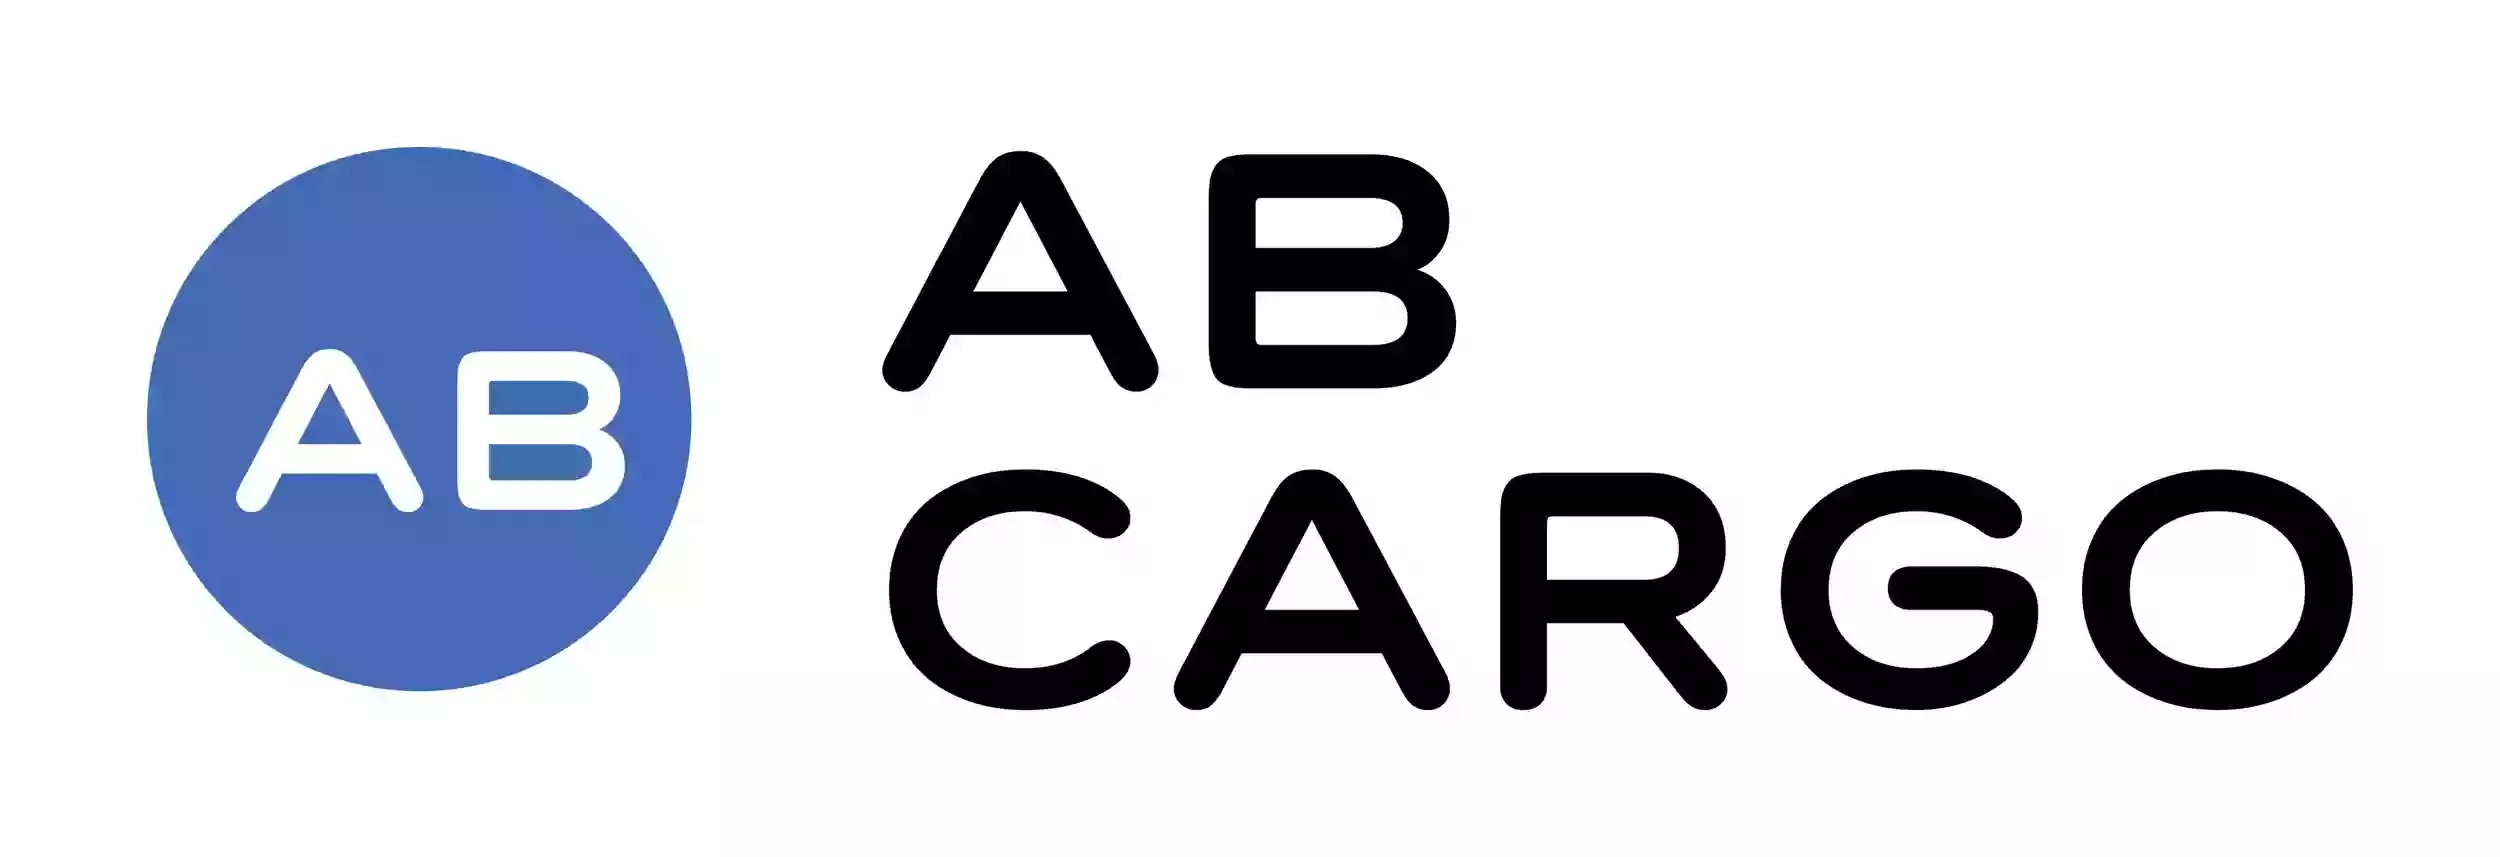 AB Cargo